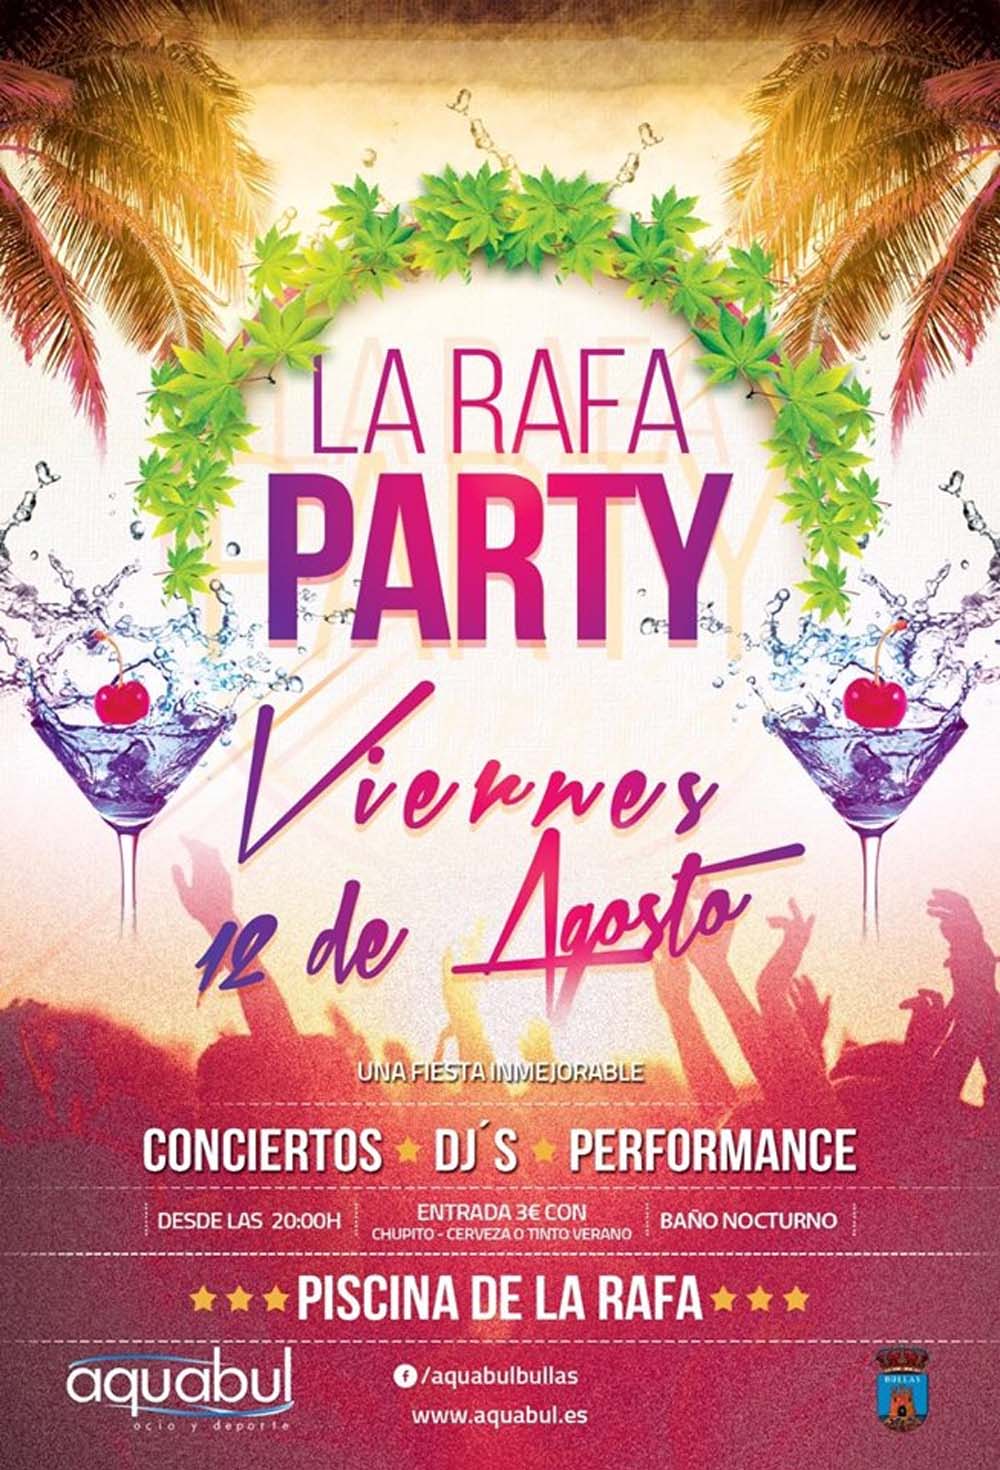 La Rafa Party, el viernes 12 de agosto organizada por Aquabul